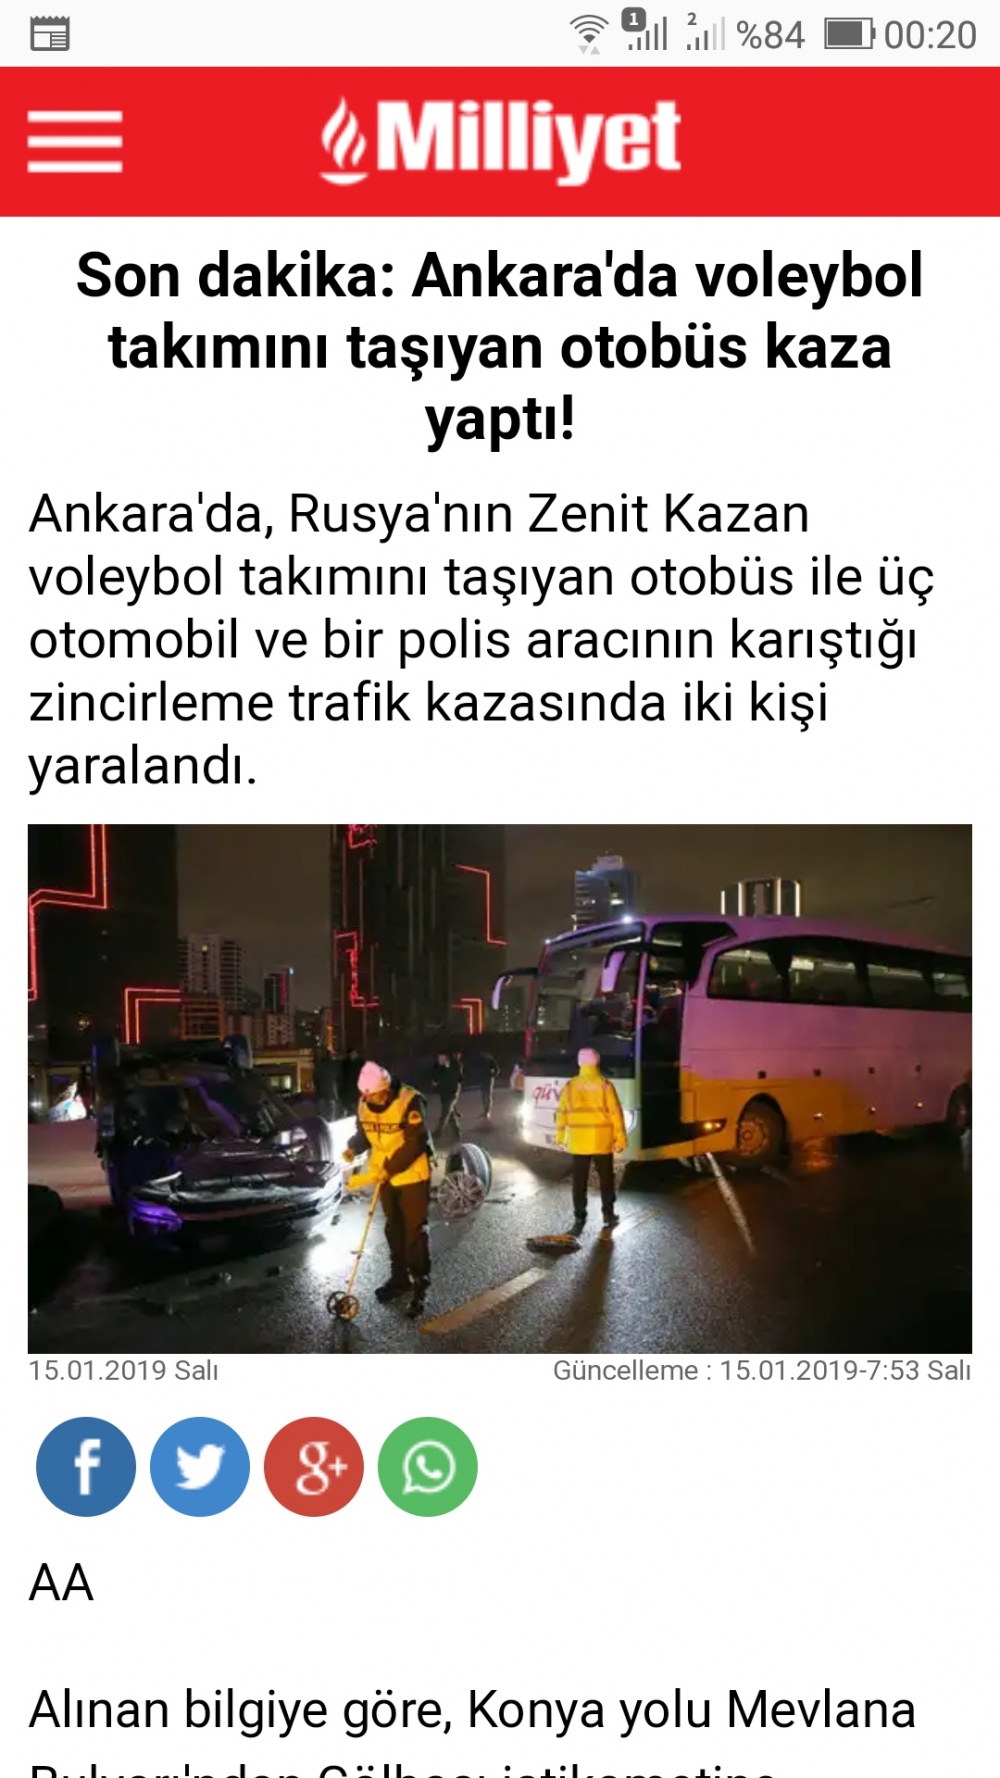 Ankara'da voleybol takımını taşıyan otobüs kaza yaptı